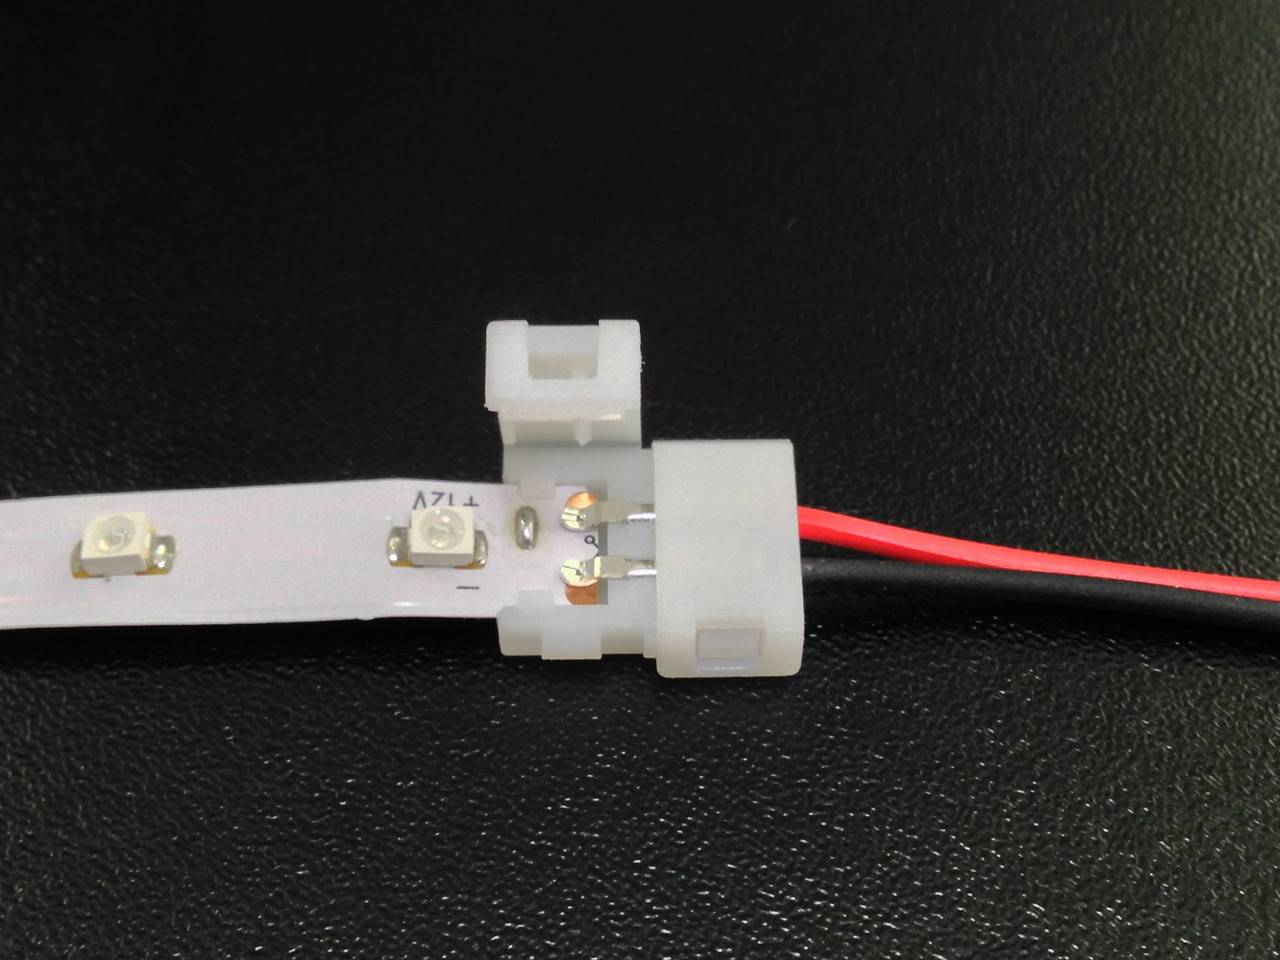 Как соединить светодиодную ленту - 3 вида коннекторов. подключение между собой без пайки, под углом, с блоком, с проводами.